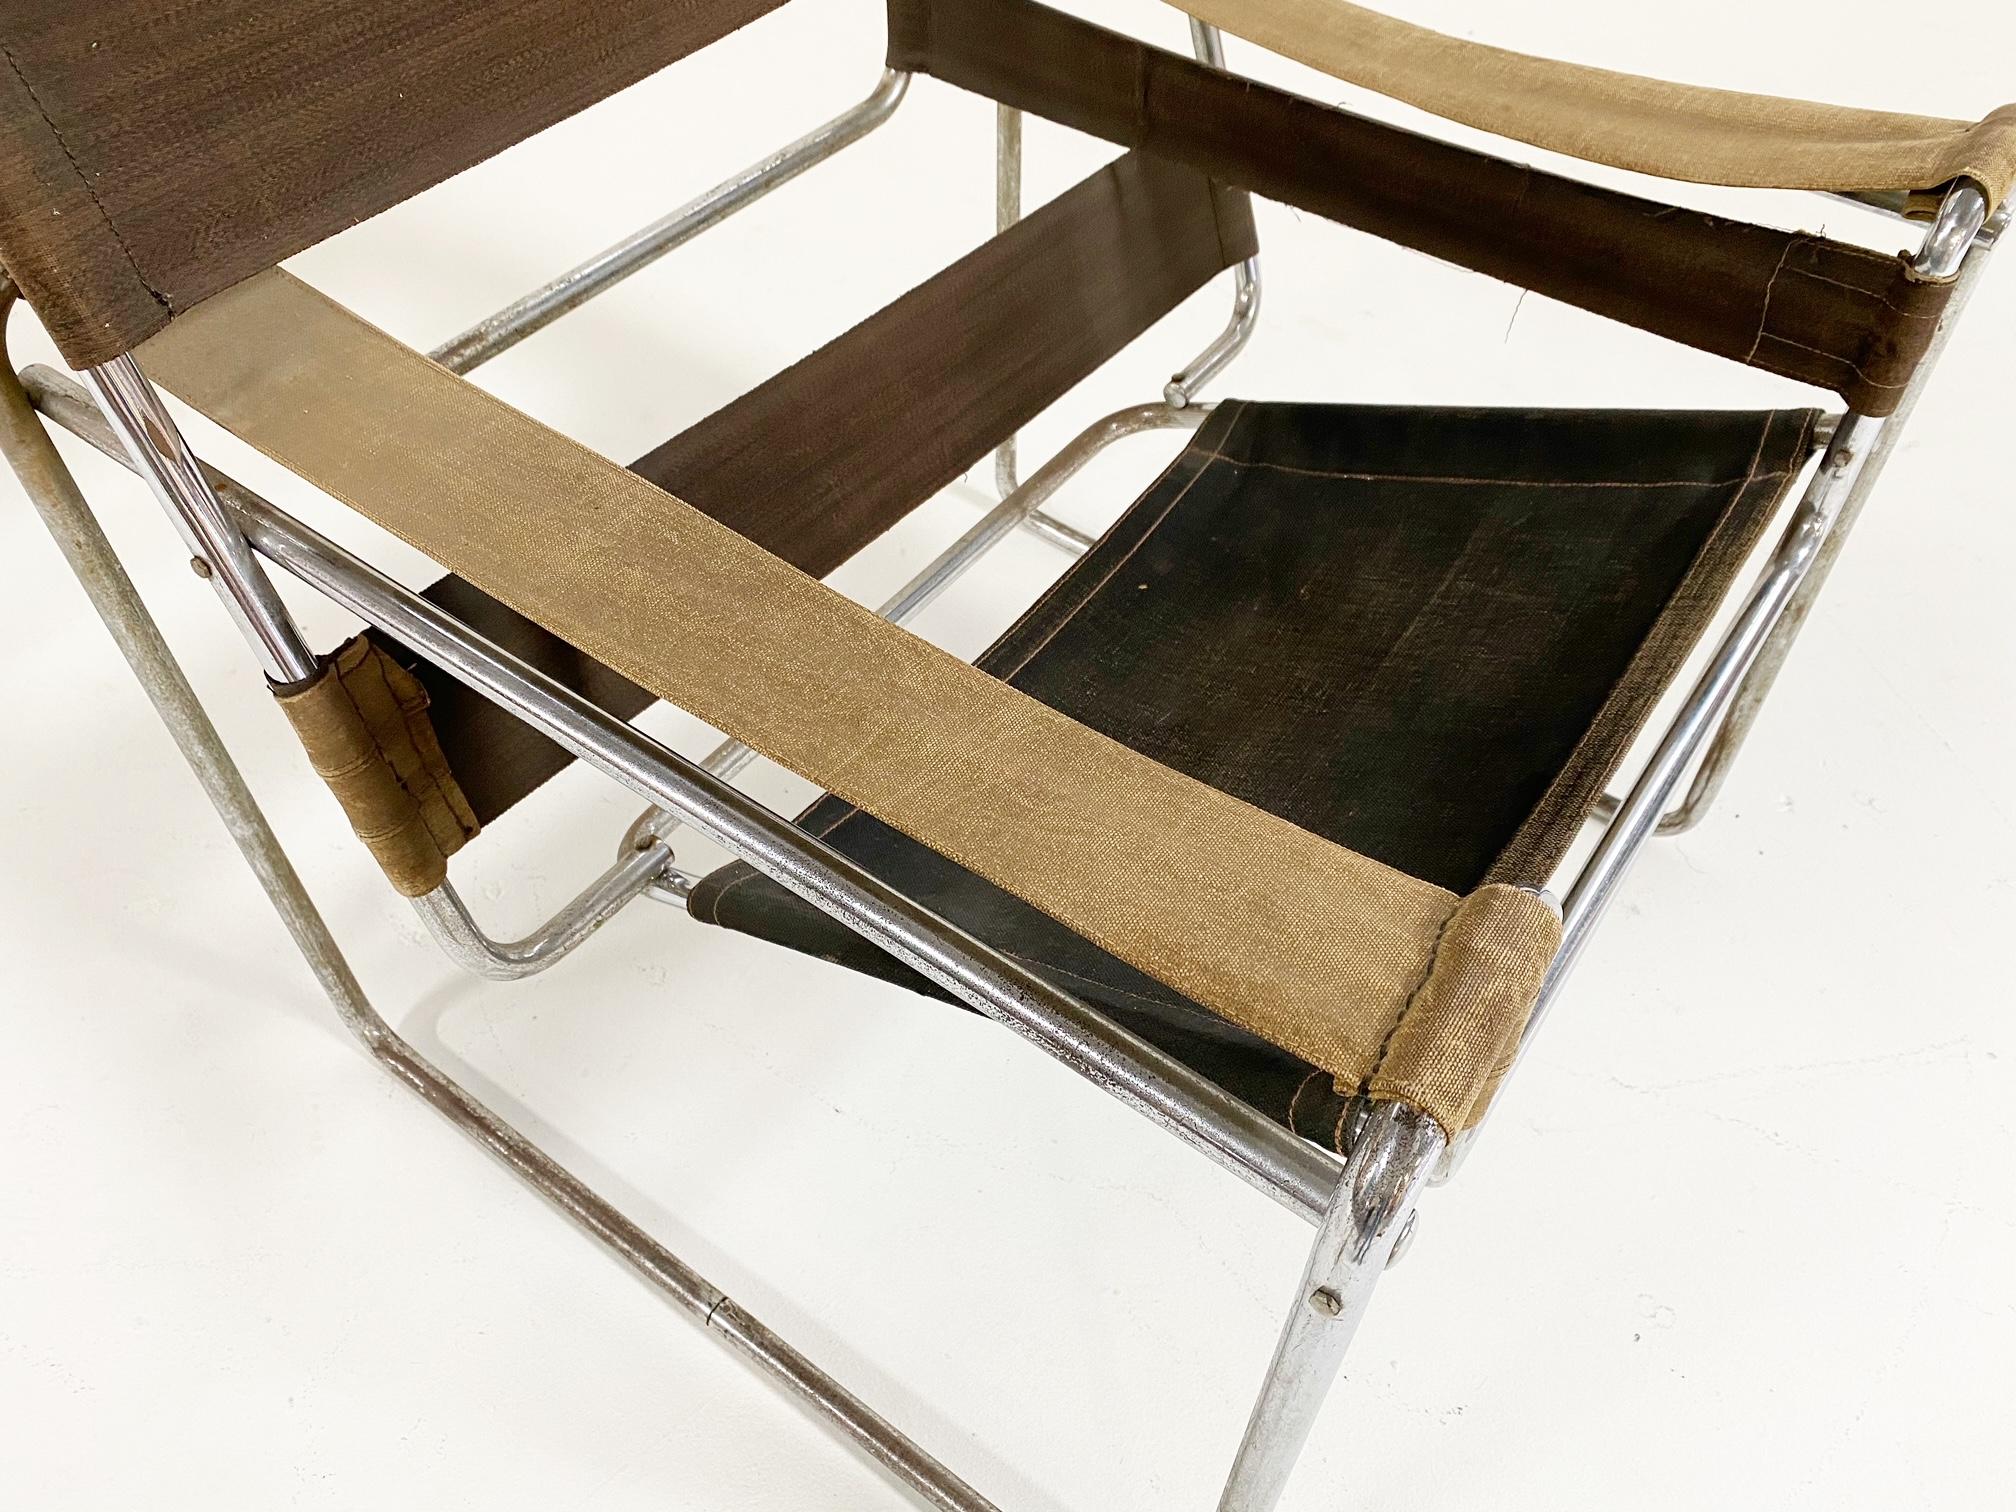 Dies ist eine frühe Wassily-Ausgabe des Berliner Herstellers Standard-Möbel. Es weist die originale armeegrüne Eisengarn-Leinwand auf. Ein wahrhaft ikonisches Design, das einen Platz in einem Museum verdient hätte.

Vorbild für diesen Sessel ist